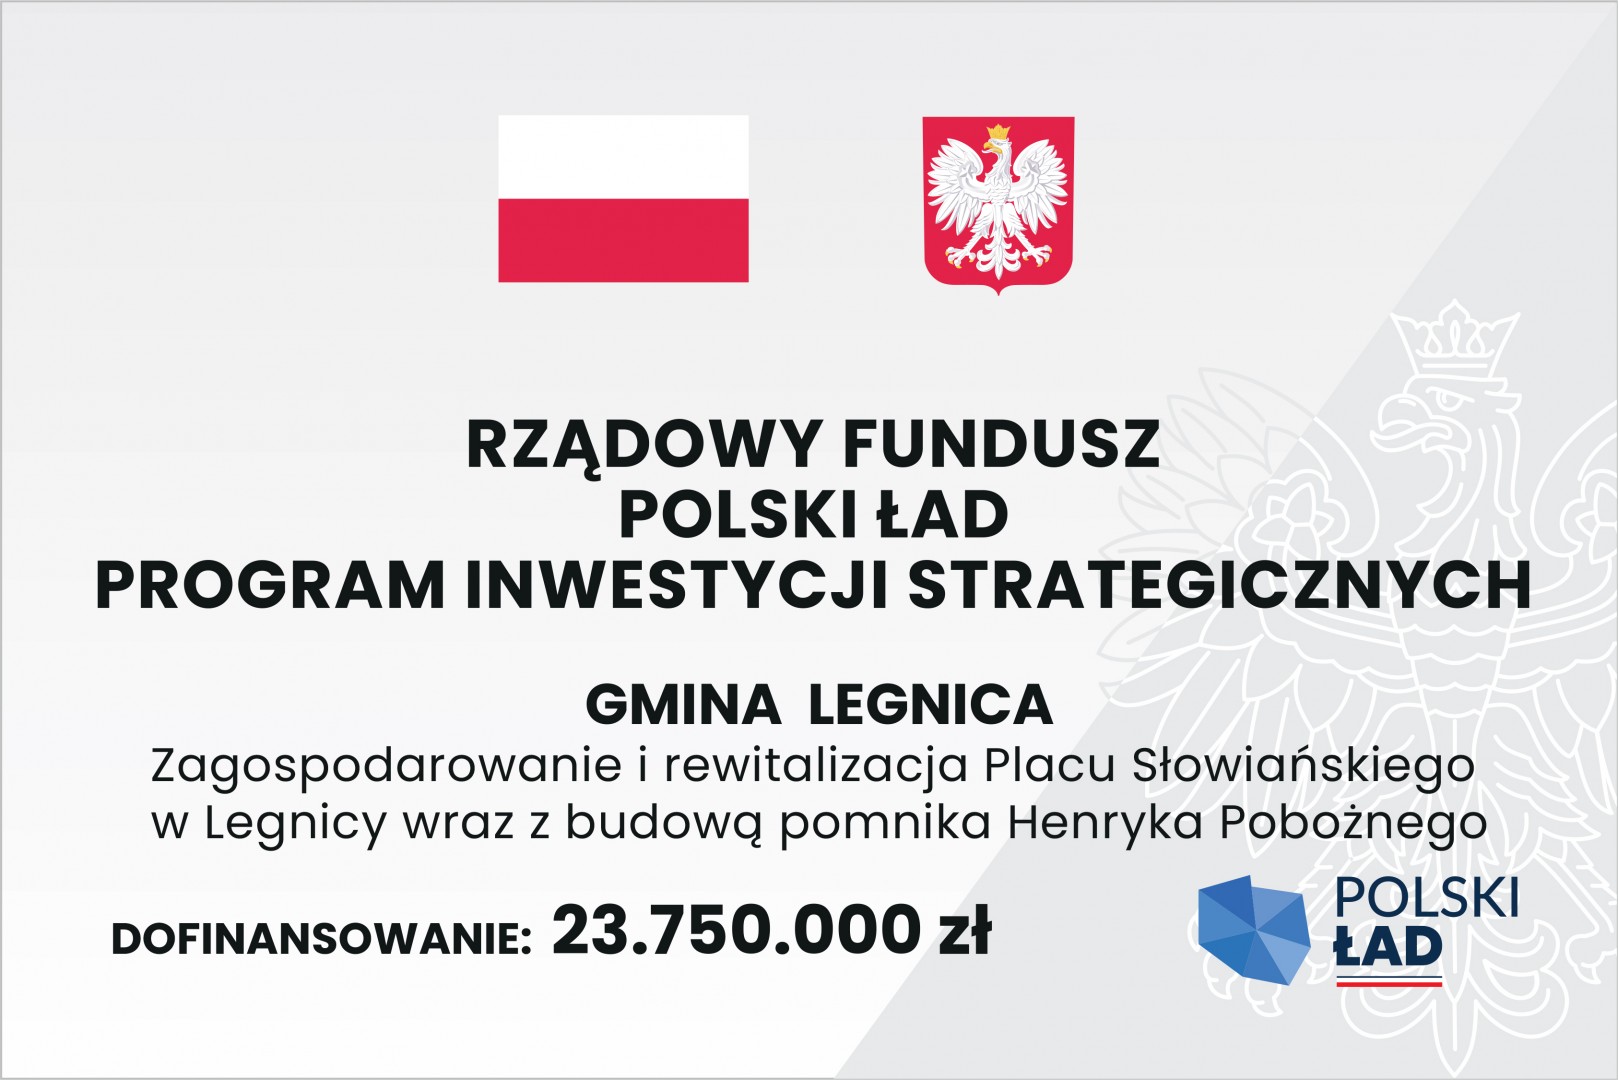 Tablica informacyjna o zagospodarowaniu i rewitalizacji Placu Słowianskiego w Legnicy wraz z budowa pomnika Henryka Poboznego